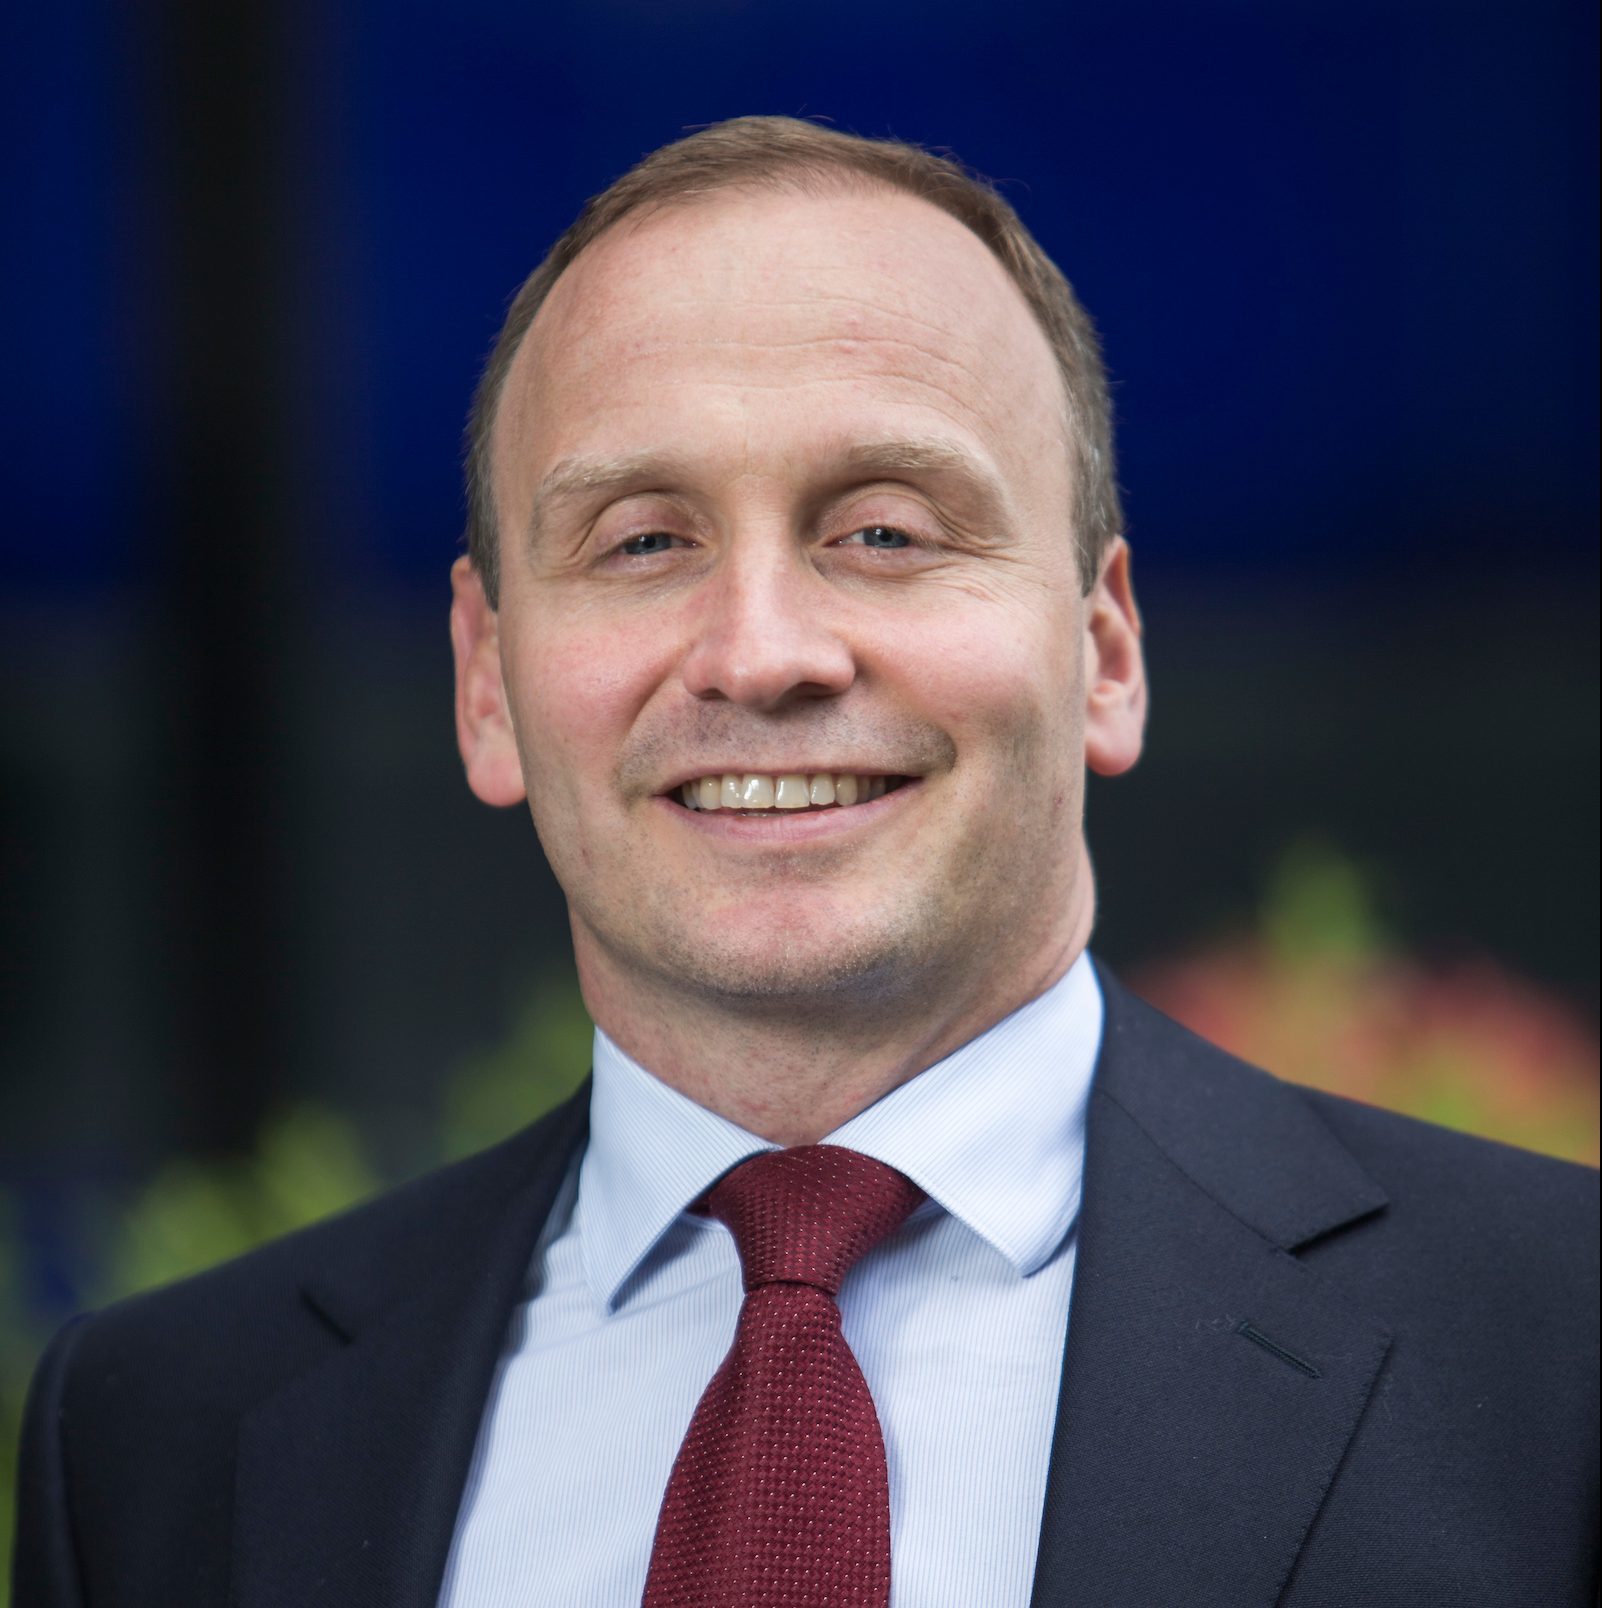 Graham Hollis, senior partner for Deloitte in Aberdeen